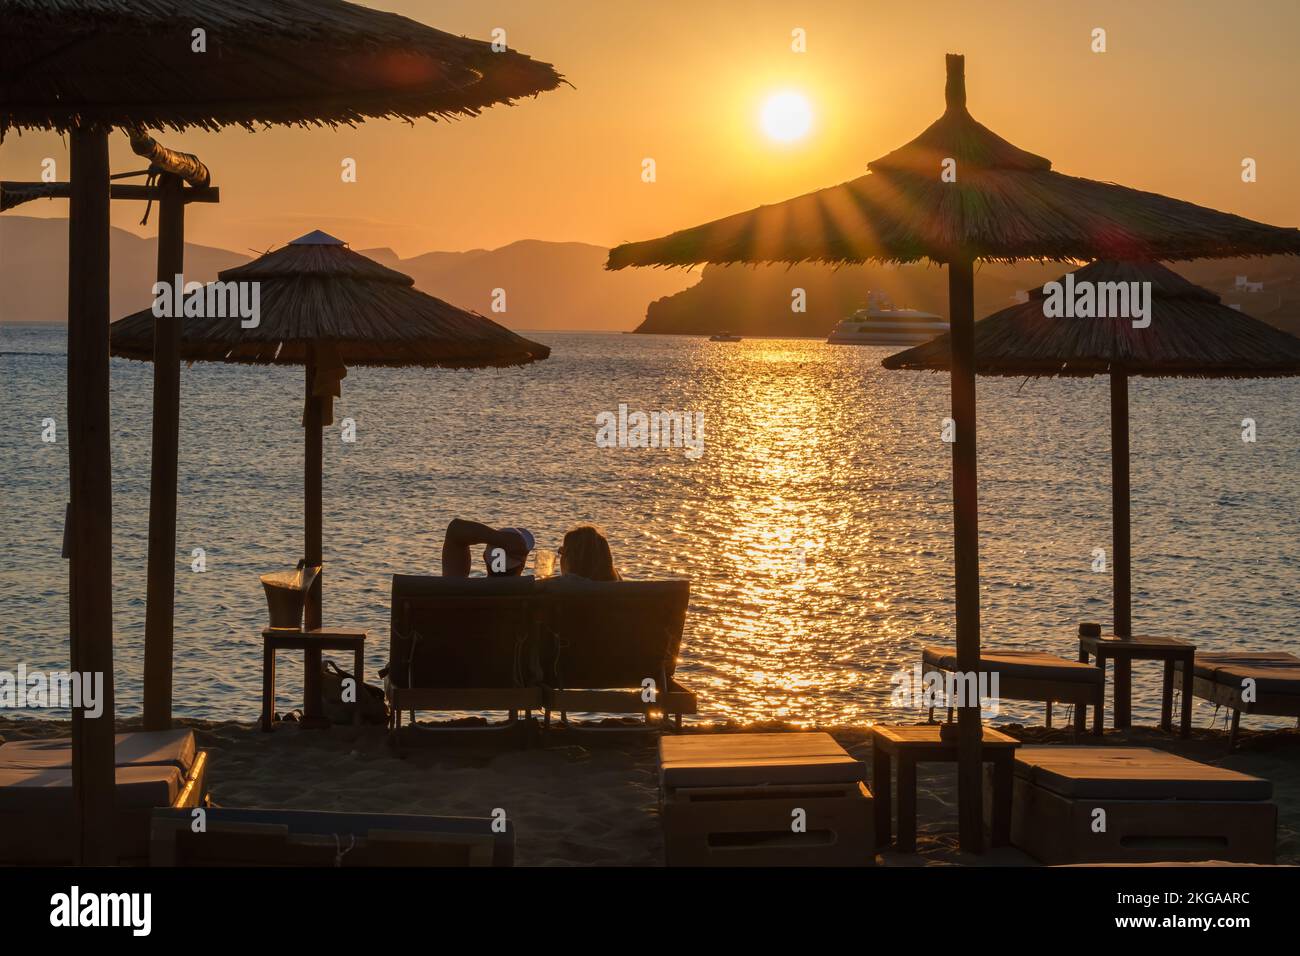 IOS, Grèce - 13 septembre 2022 : vue d'un couple allongé sur des chaises longues, boire du vin et profiter de l'incroyable coucher de soleil orange dans iOS Grèce Banque D'Images